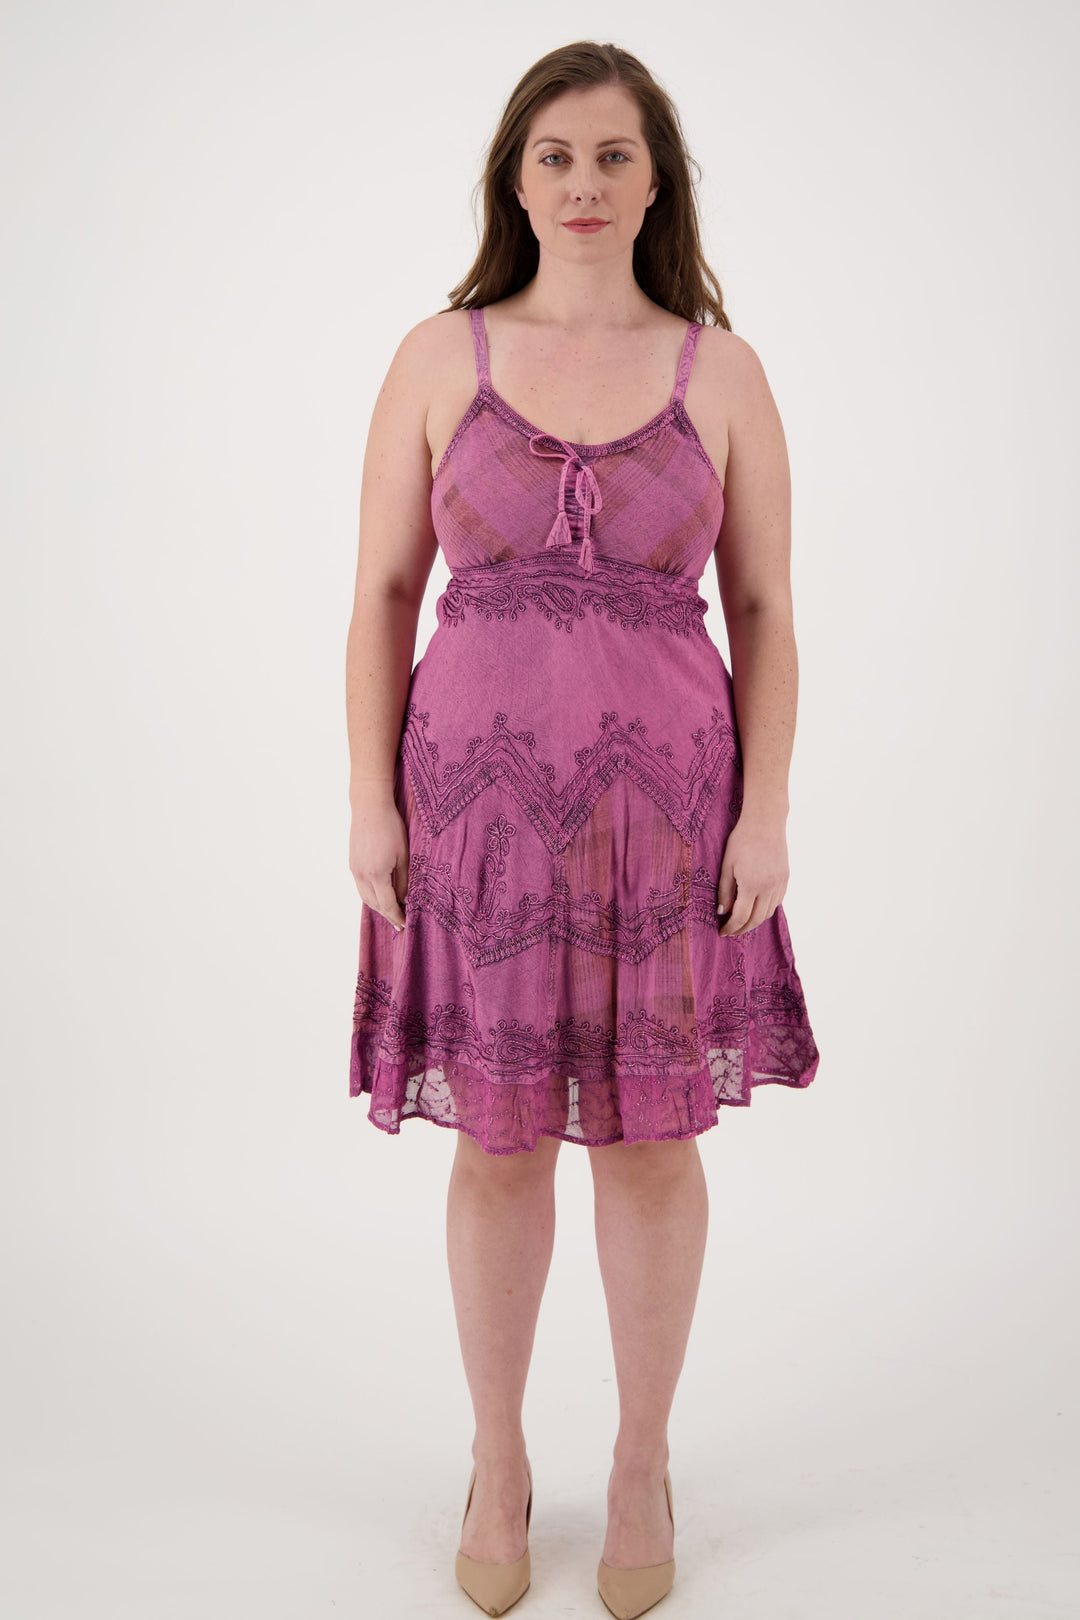 Plaid Panel Mid-Length Renaissance Dress (S/M - L/XL) 7 Colors 151304